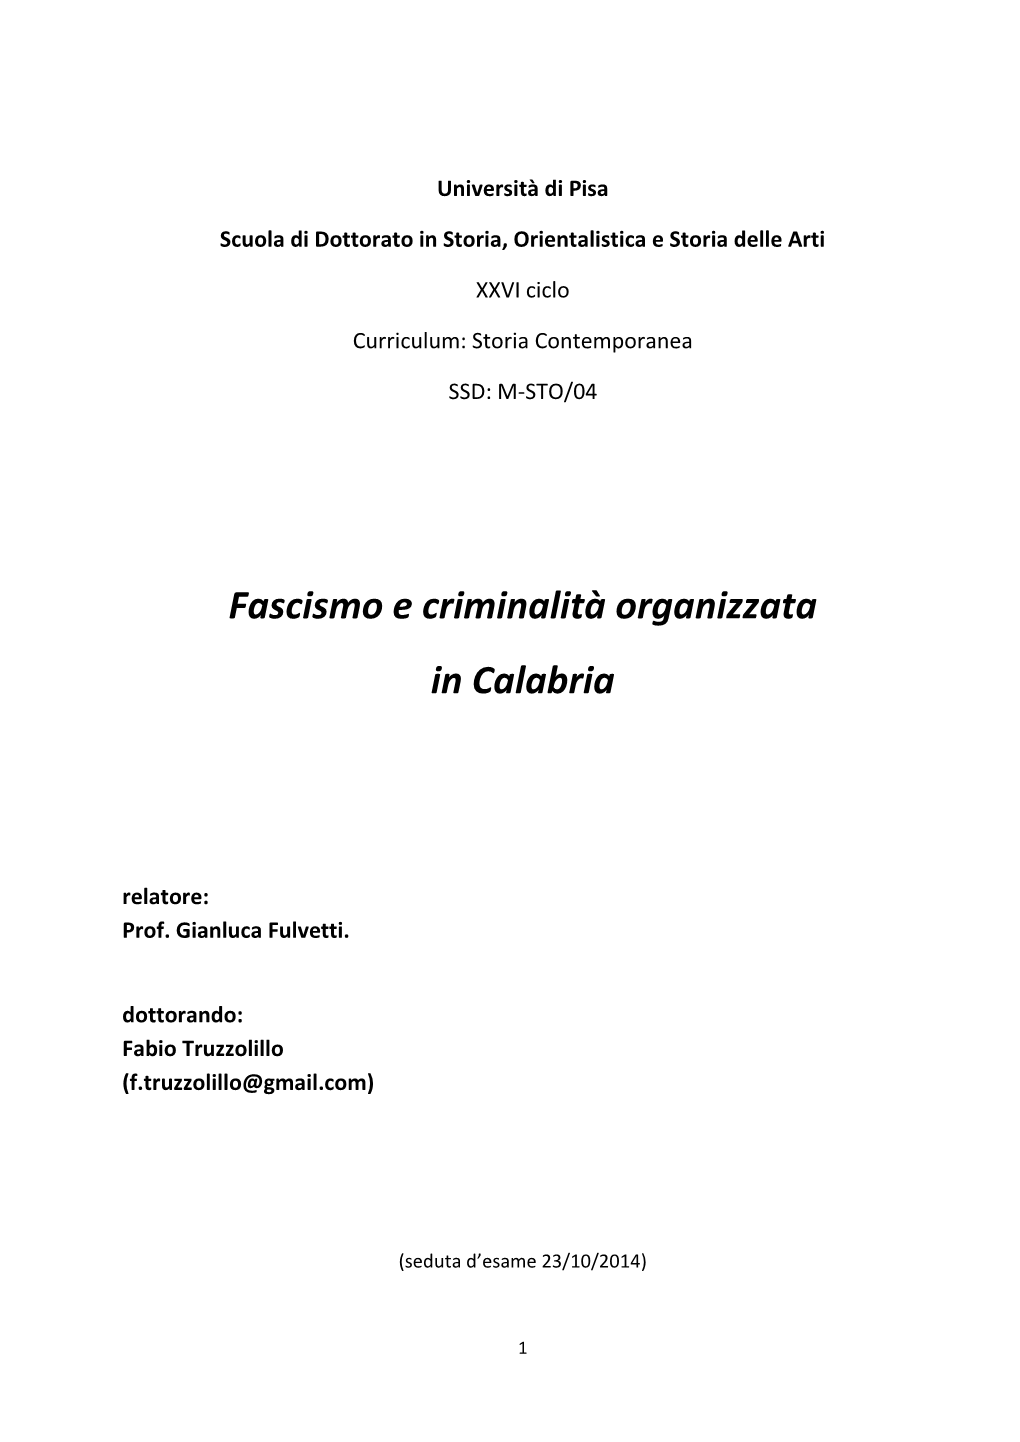 Fascismo E Criminalità Organizzata in Calabria